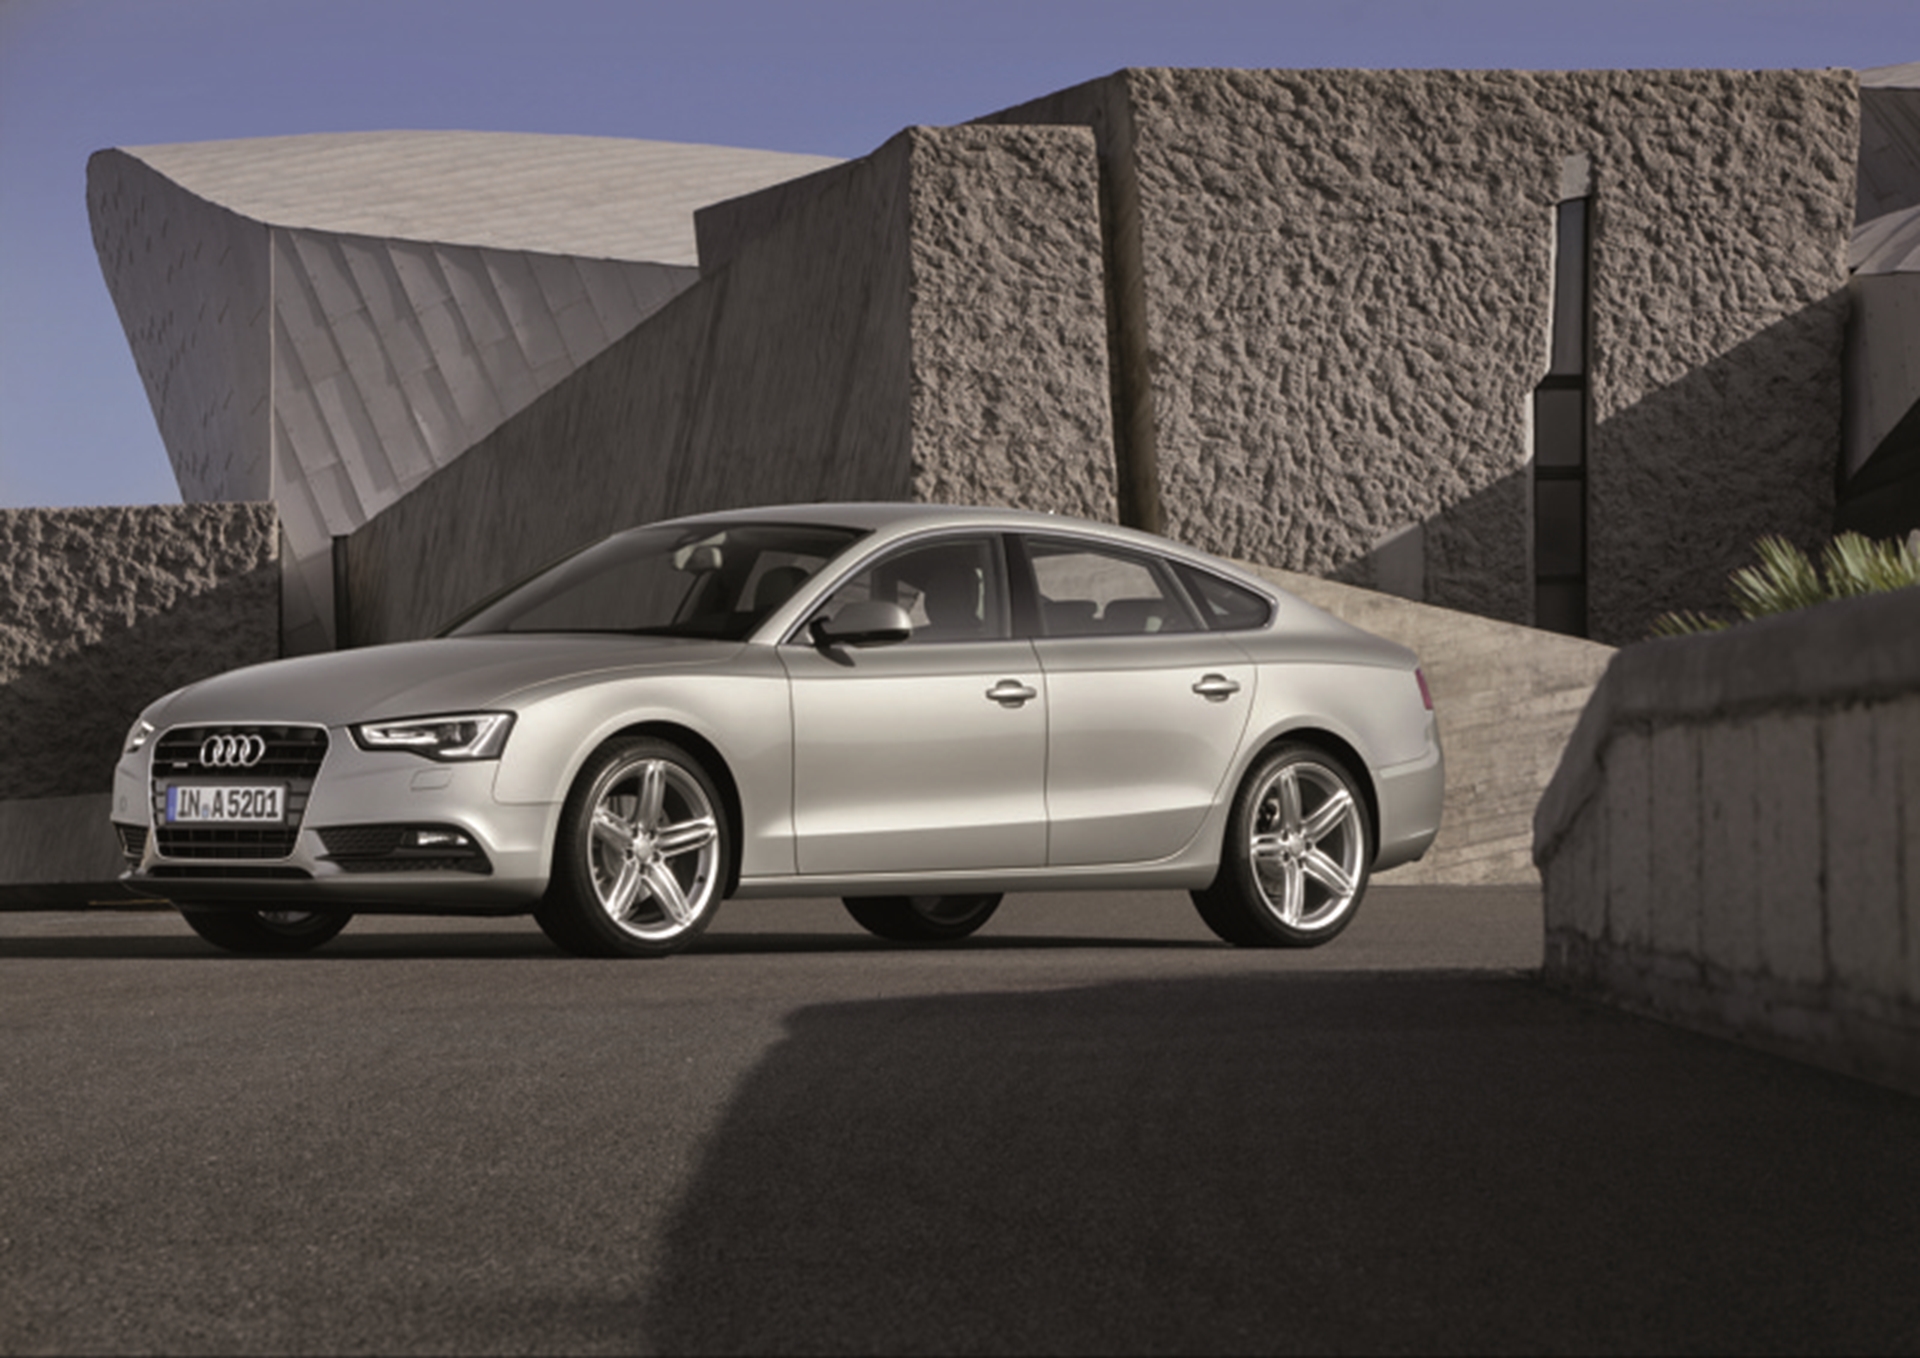 Audi A5 at NAIAS 2012